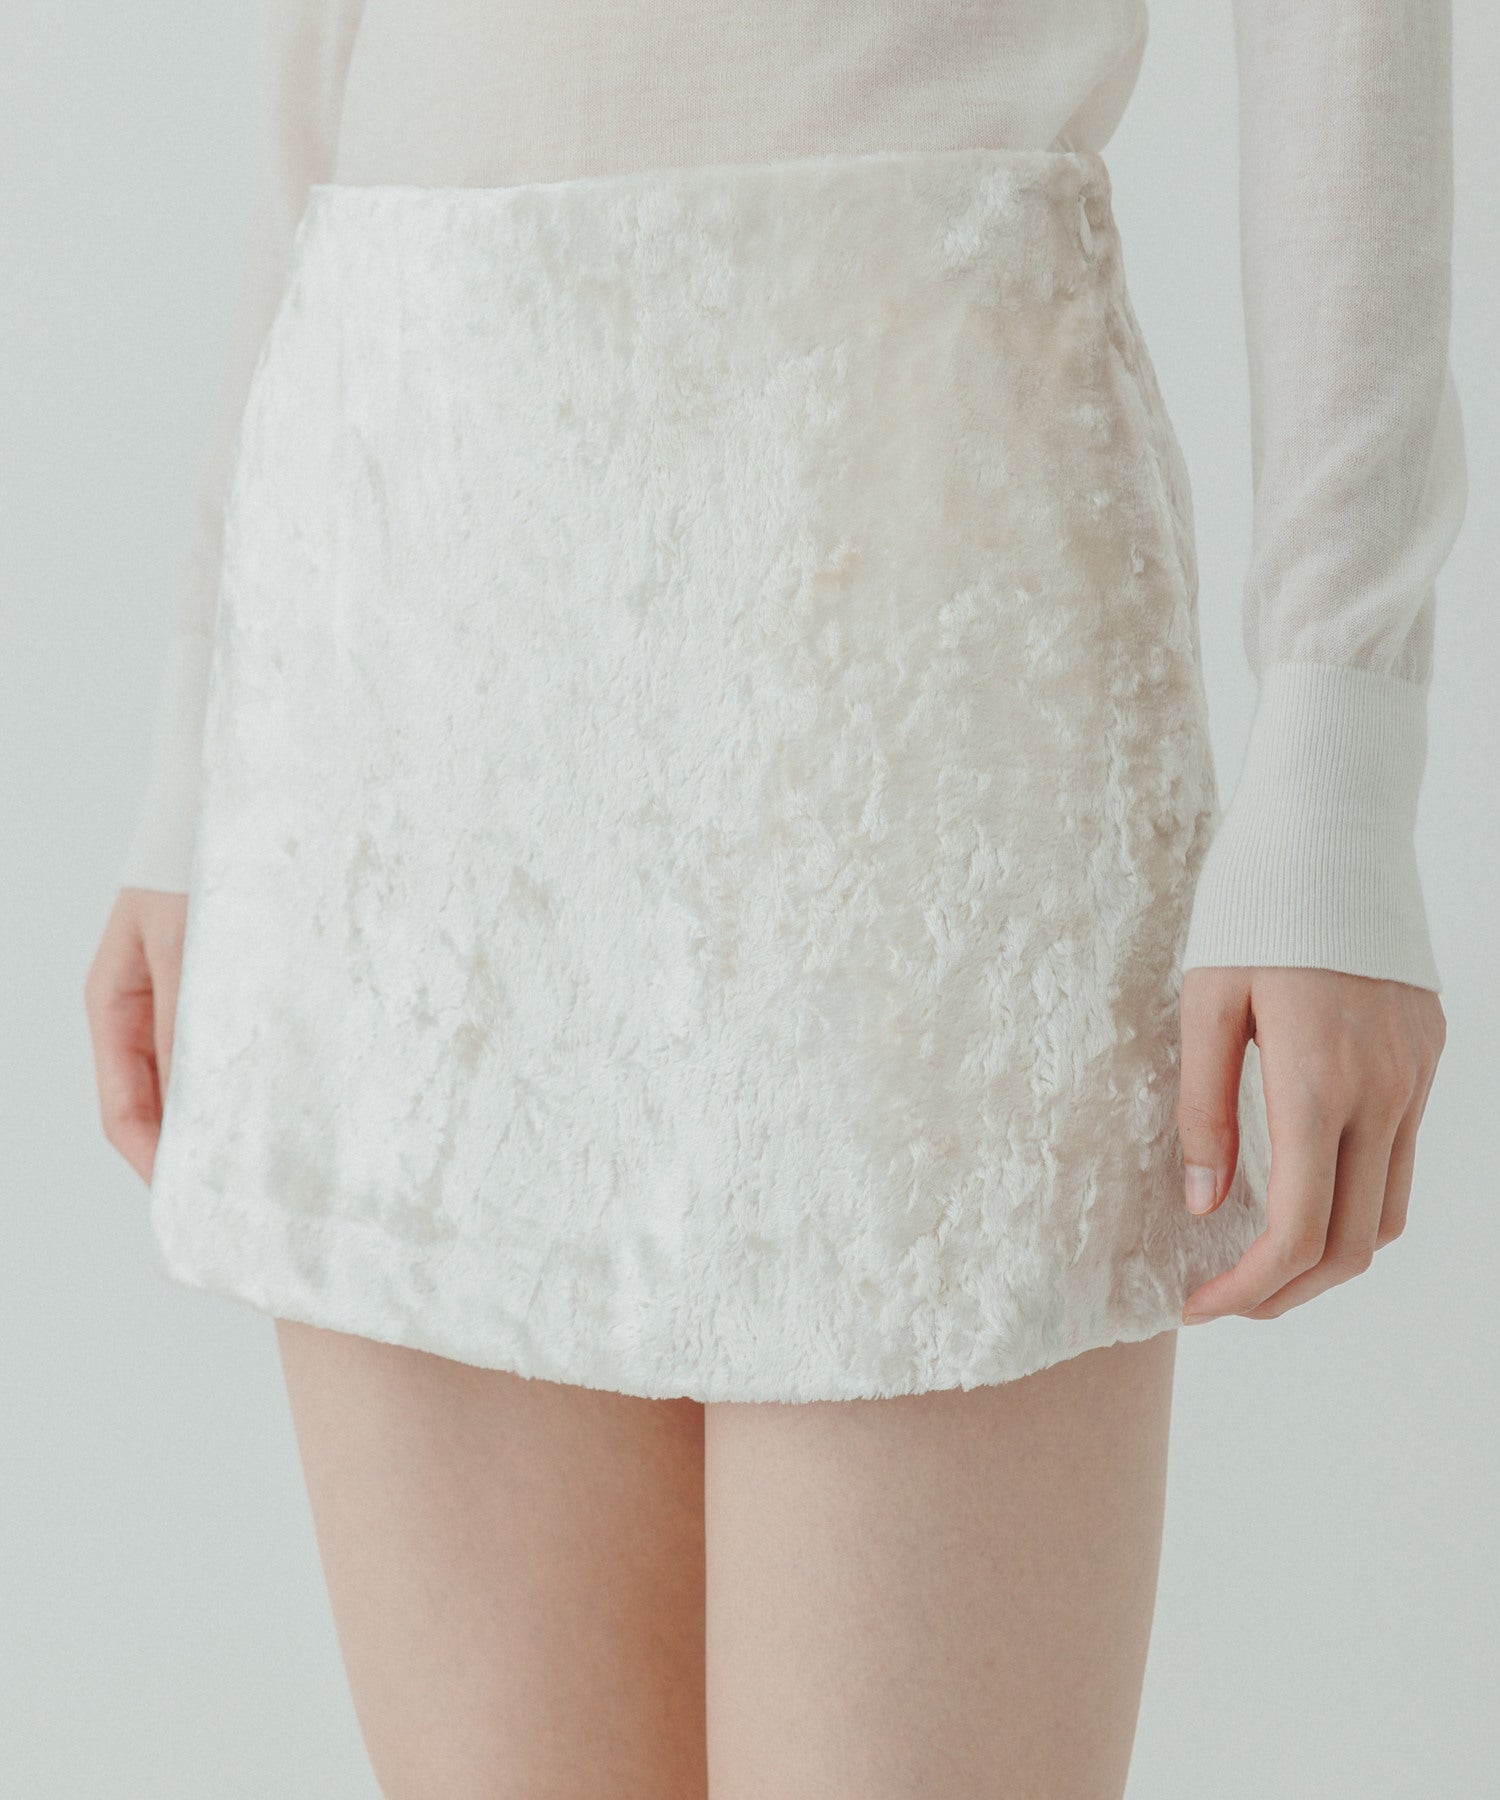 biotopyo biotop sheer tight skirt ホワイト size1 - ロング